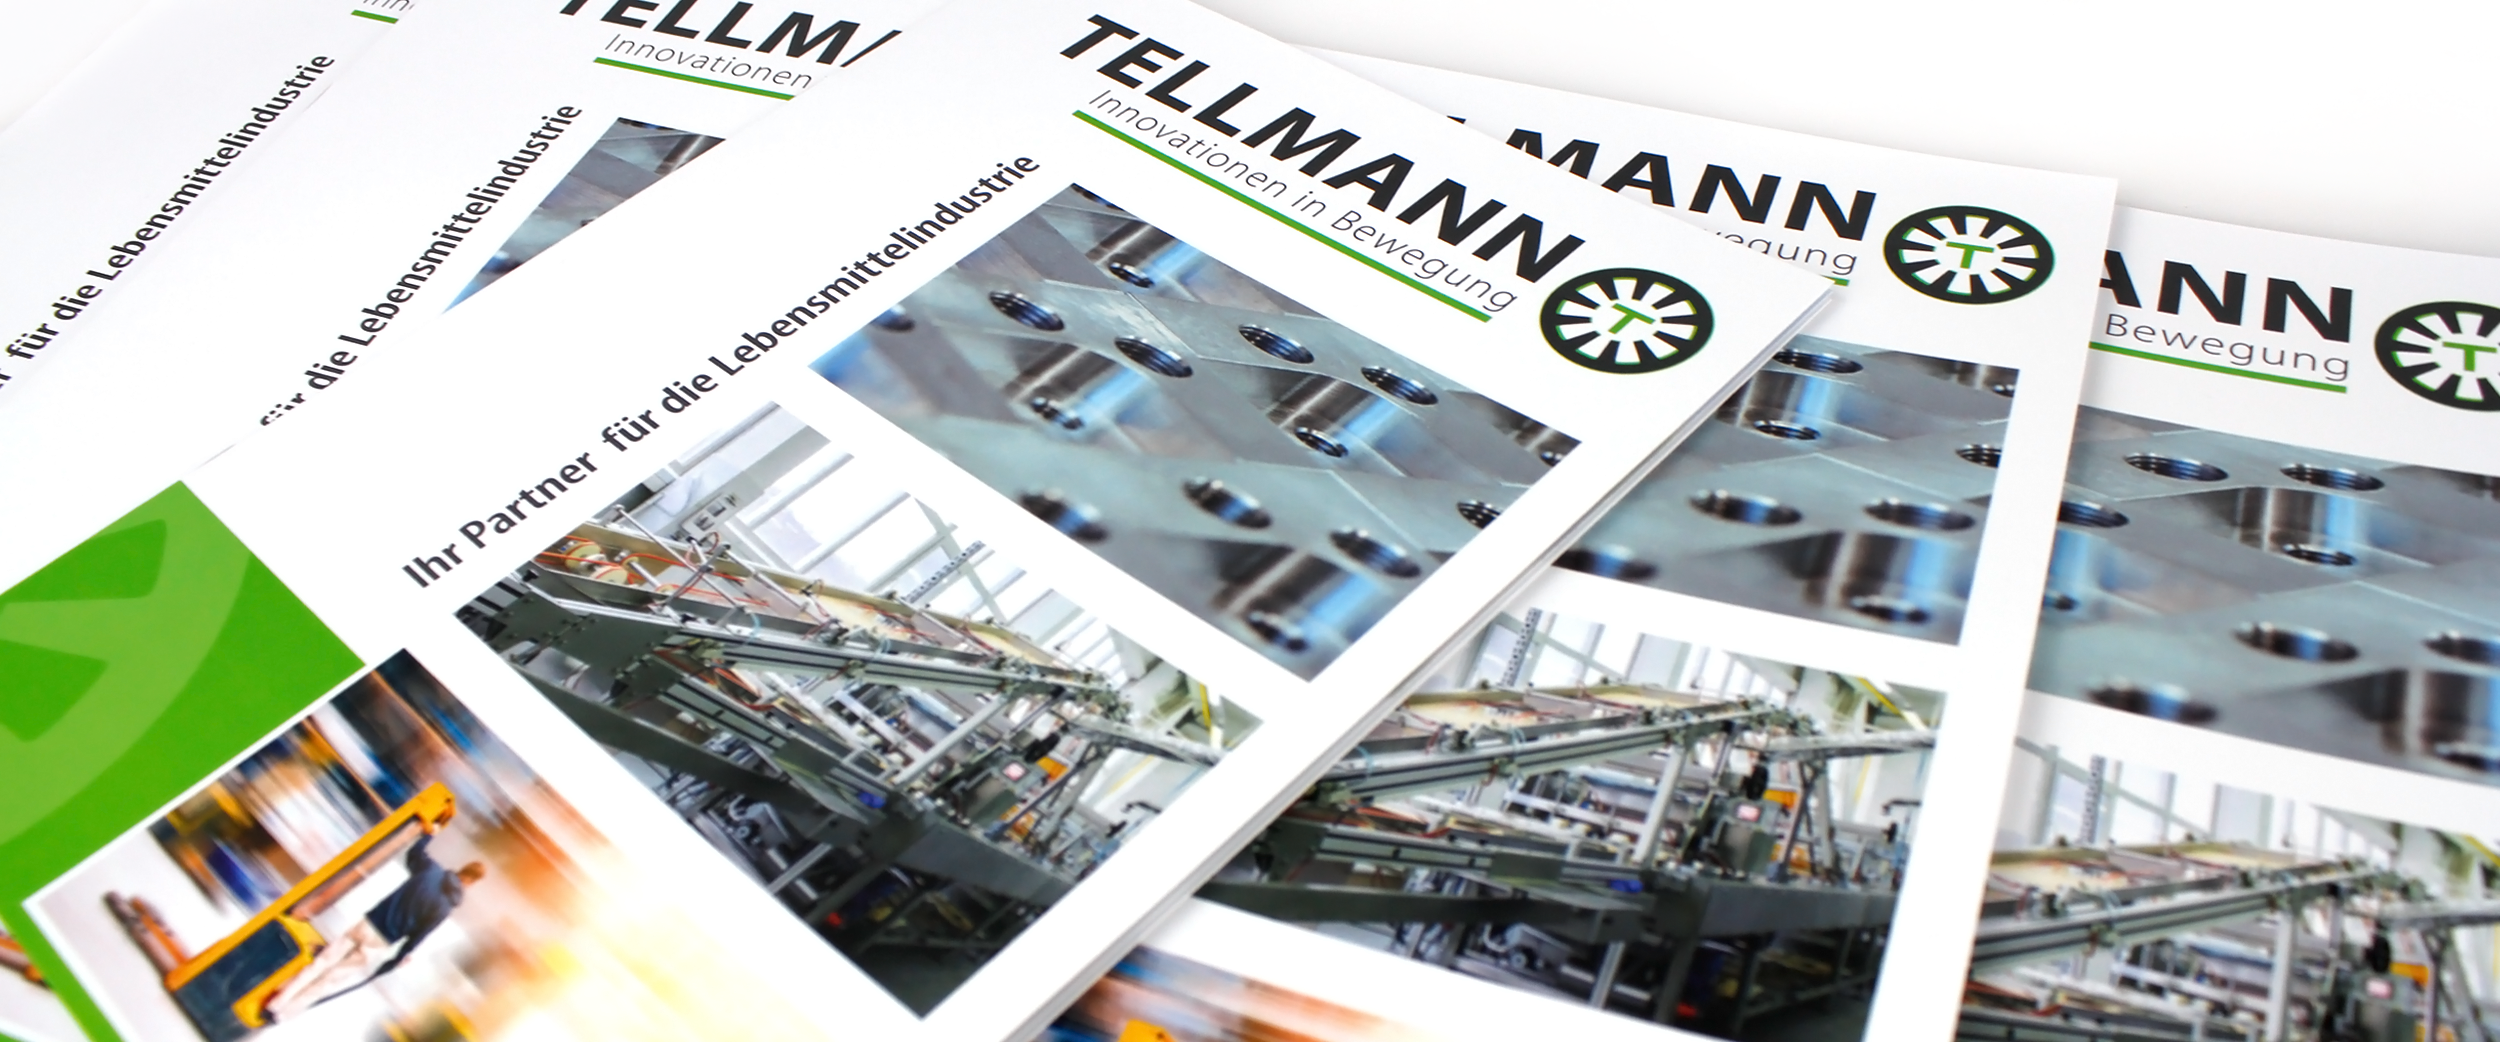 Tellmann GmbH & Co. KG